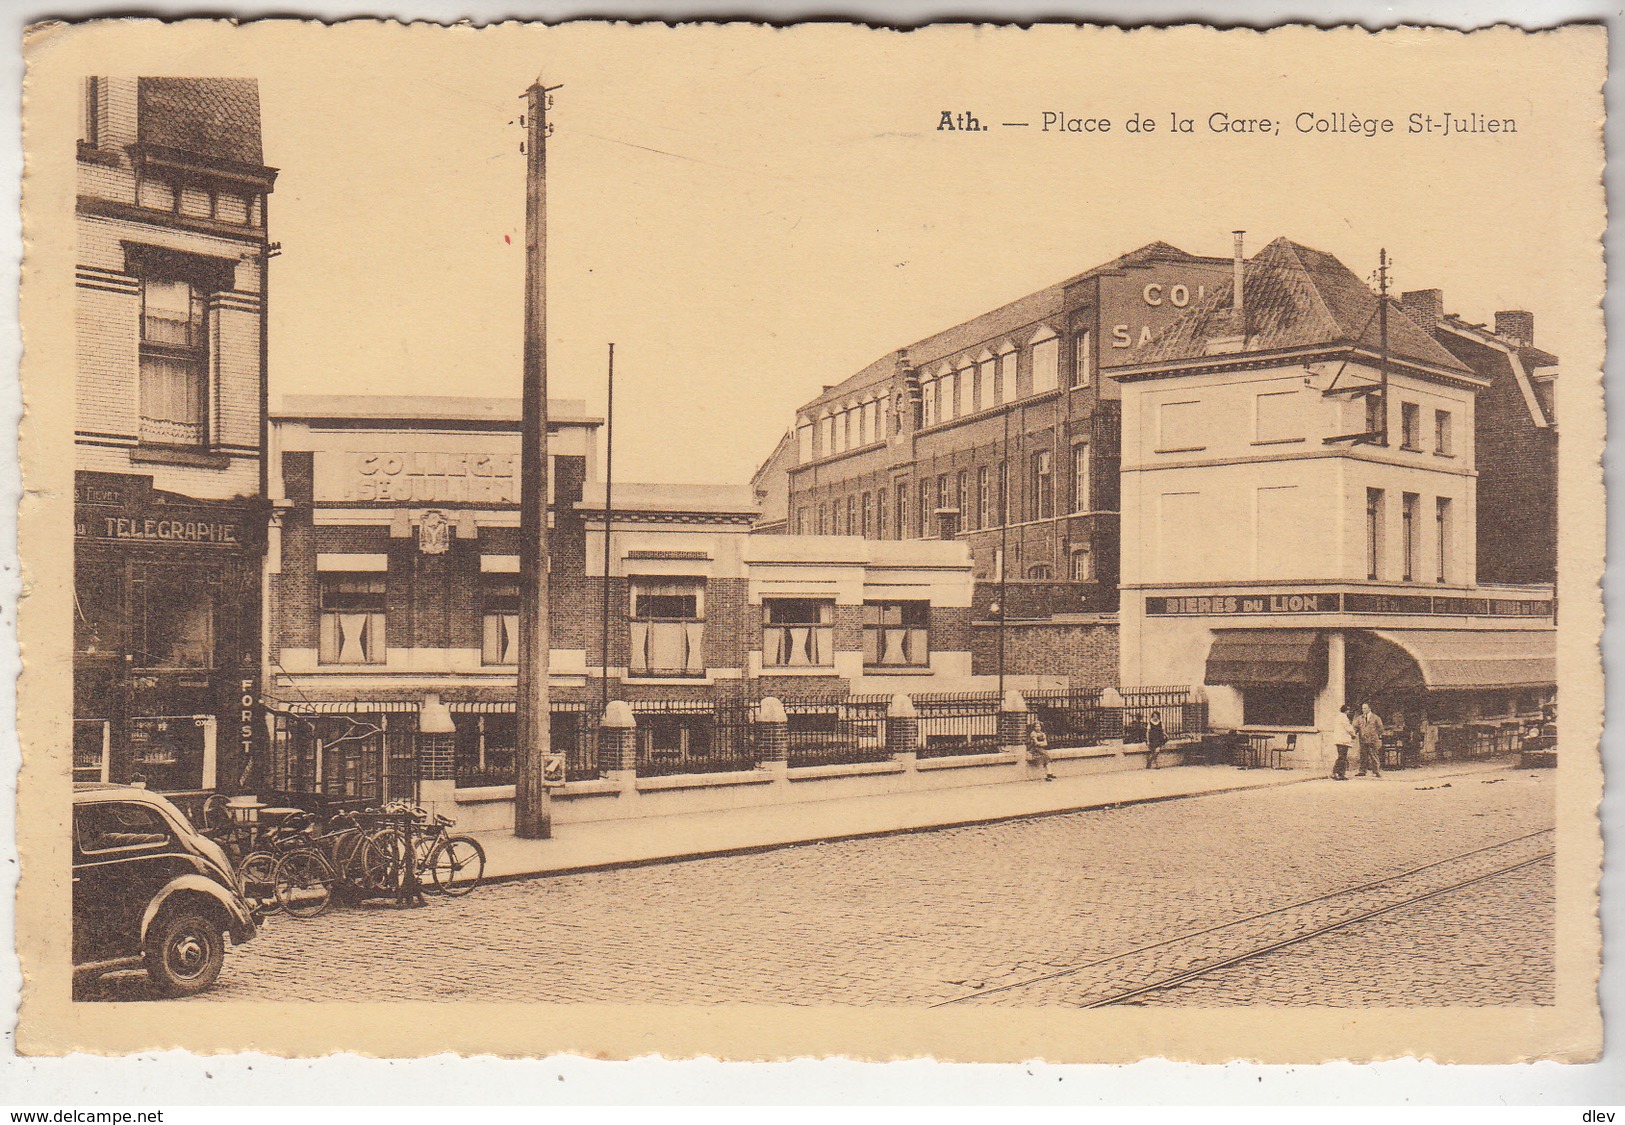 Ath - Place De La Gare. Collège St-Julien - 1946 - L' Edition Belge, Bruxelles - Ath